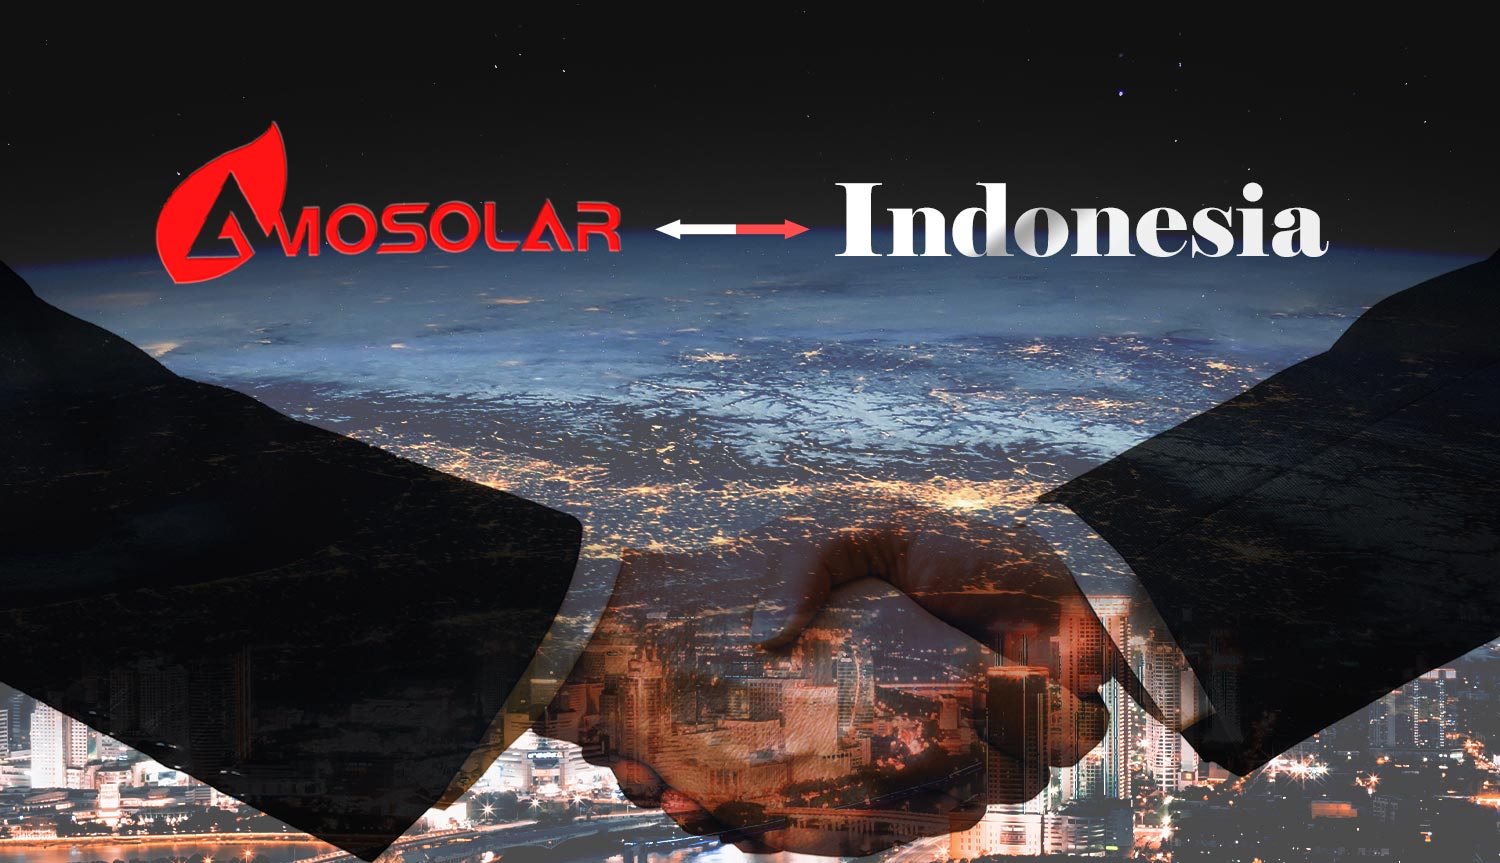 A marca registrada Amosolar foi listada em Propriedade Intelectual na Indonésia.